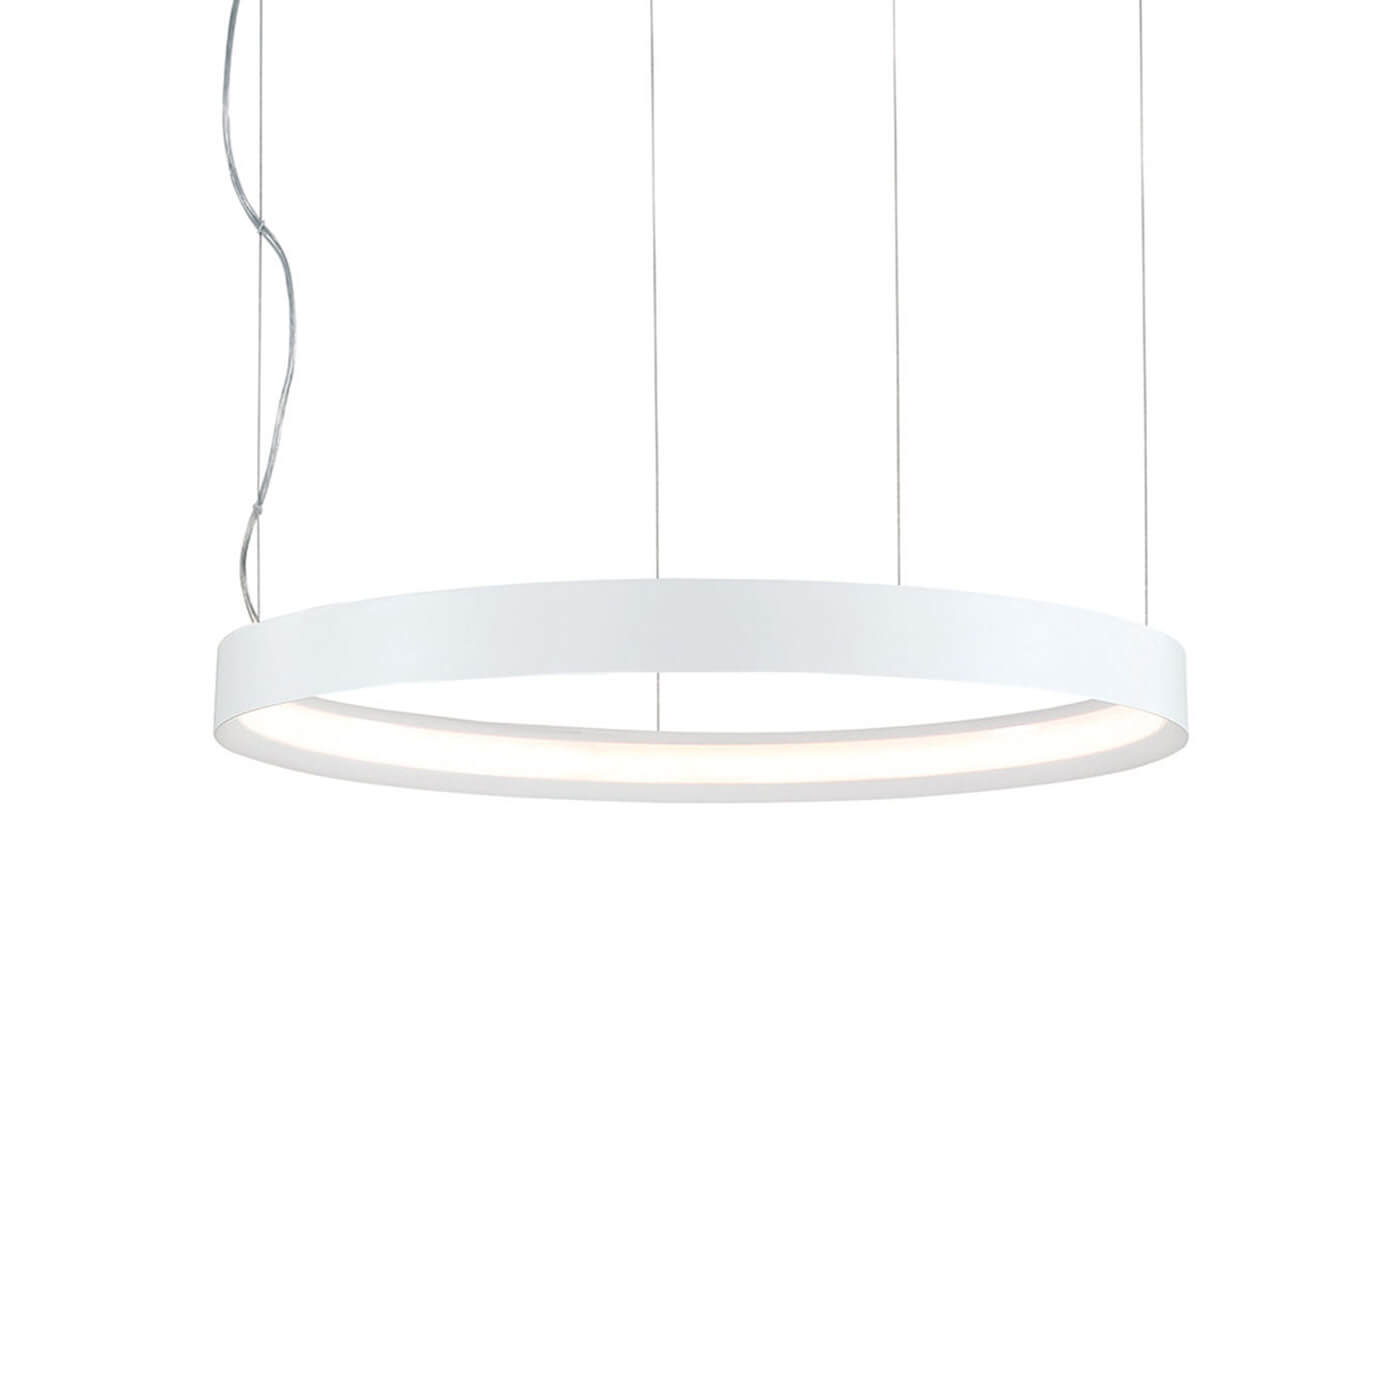 Cauti o lampa suspendata VERDI 80 alba cu LED 33W, design modern, minimalist, pentru living, dining sau dormitor din colectia de lustre si candelabre Domicilio?